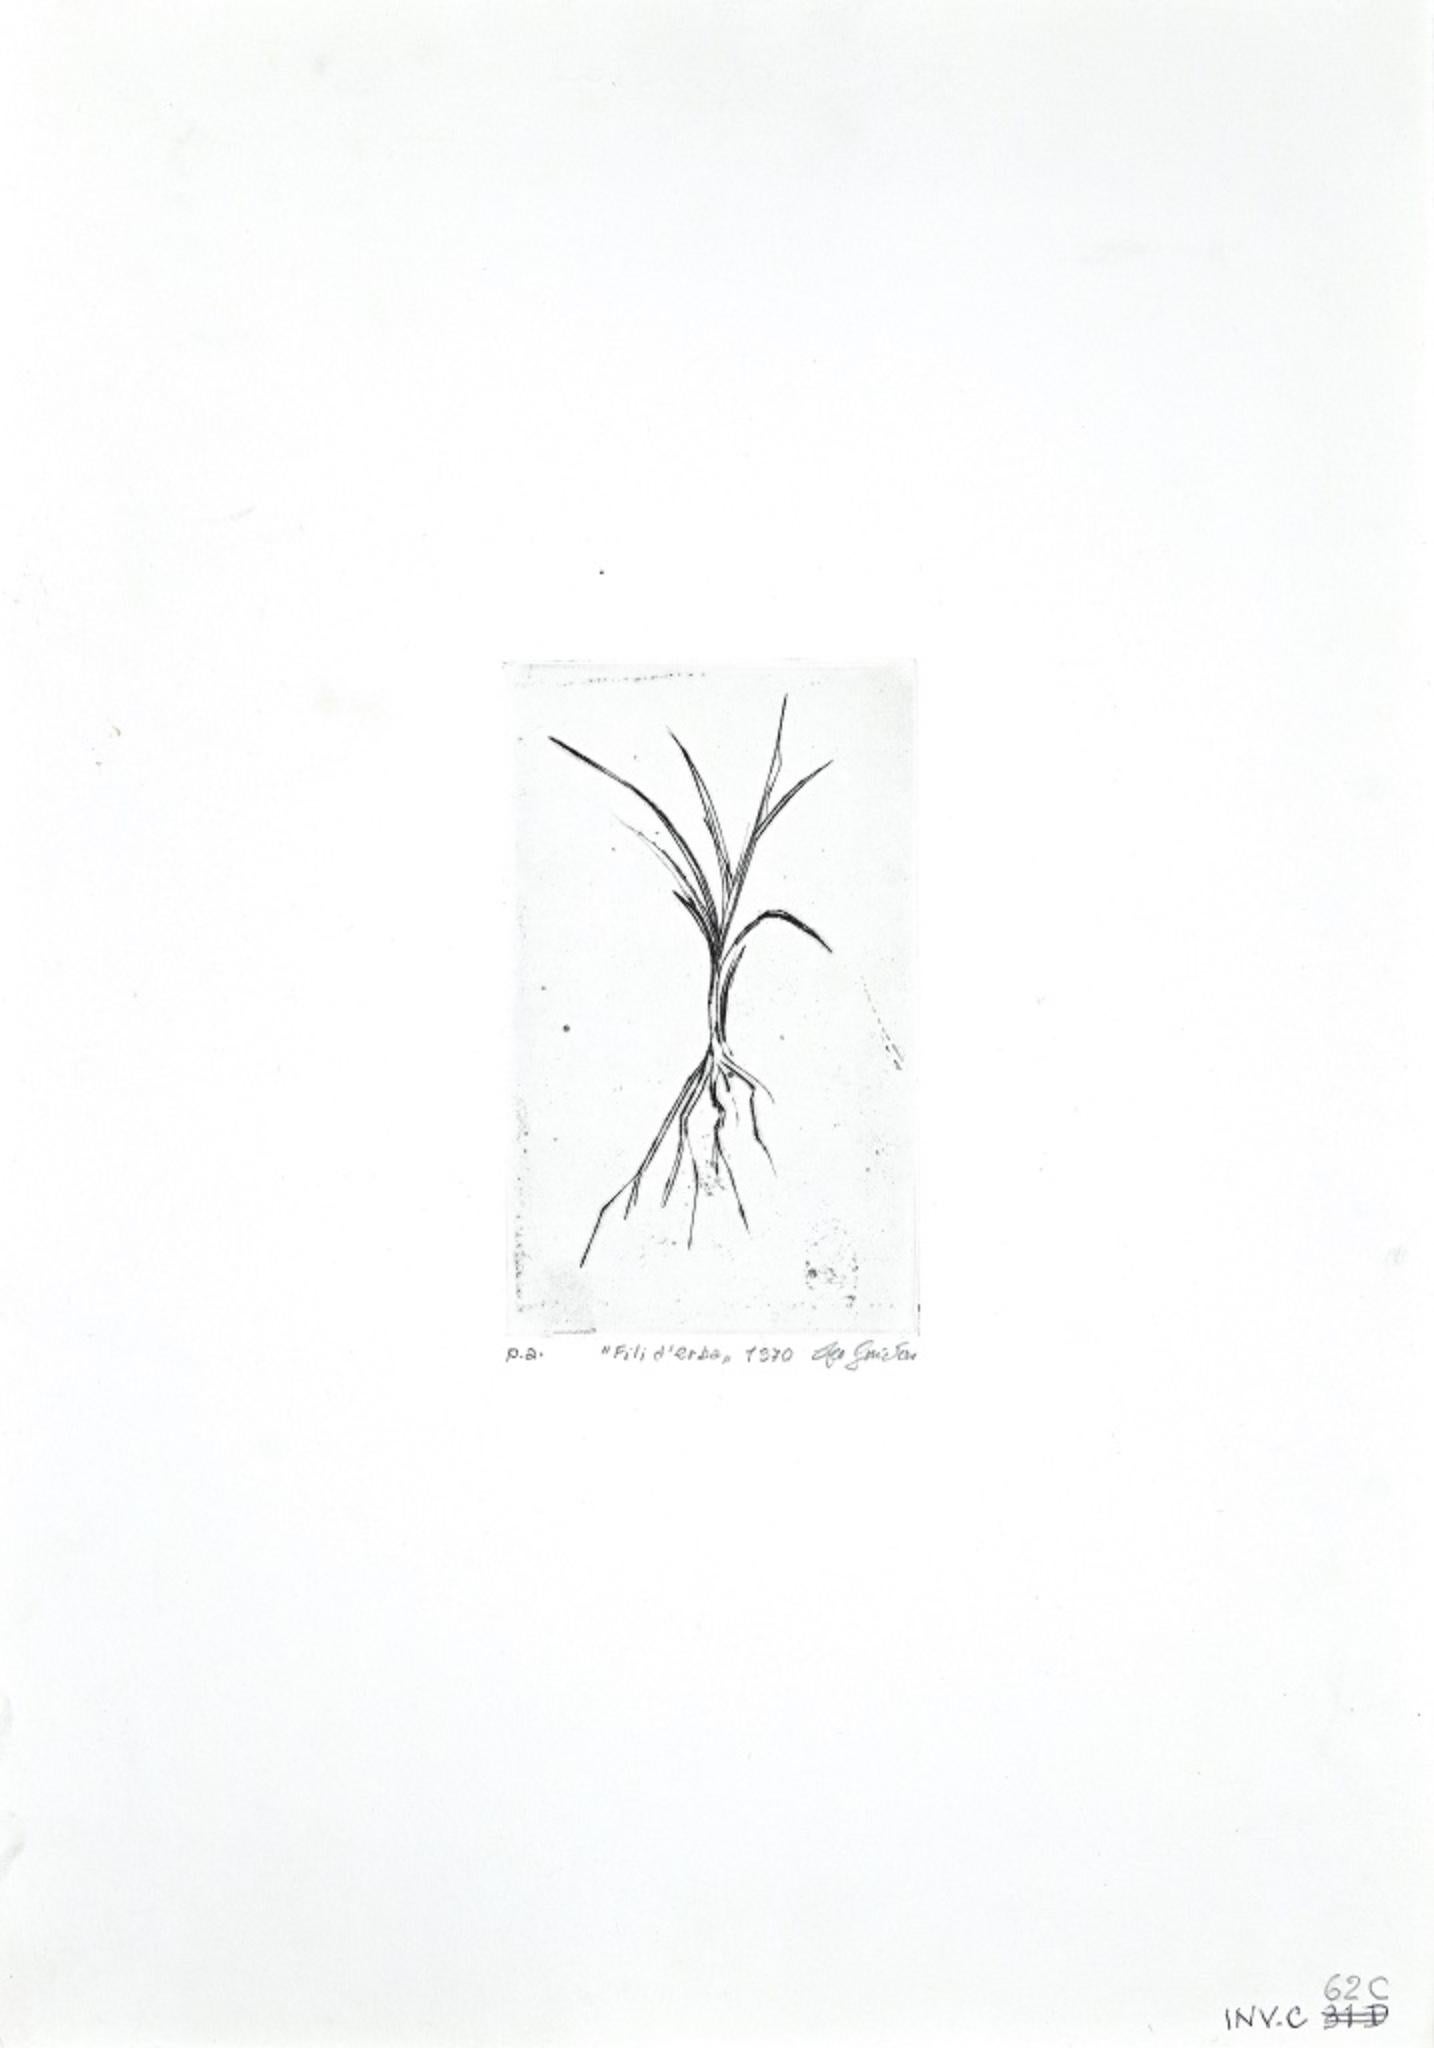 Blades of Grass (italienischer Originaltitel "Fili d'erba") ist ein originales zeitgenössisches Kunstwerk des italienischen Künstlers Leo Guida aus dem Jahr 1970.

Original S/W-Radierung auf Papier.  Abmessungen des Bildes: 16 x 0,1 x 10